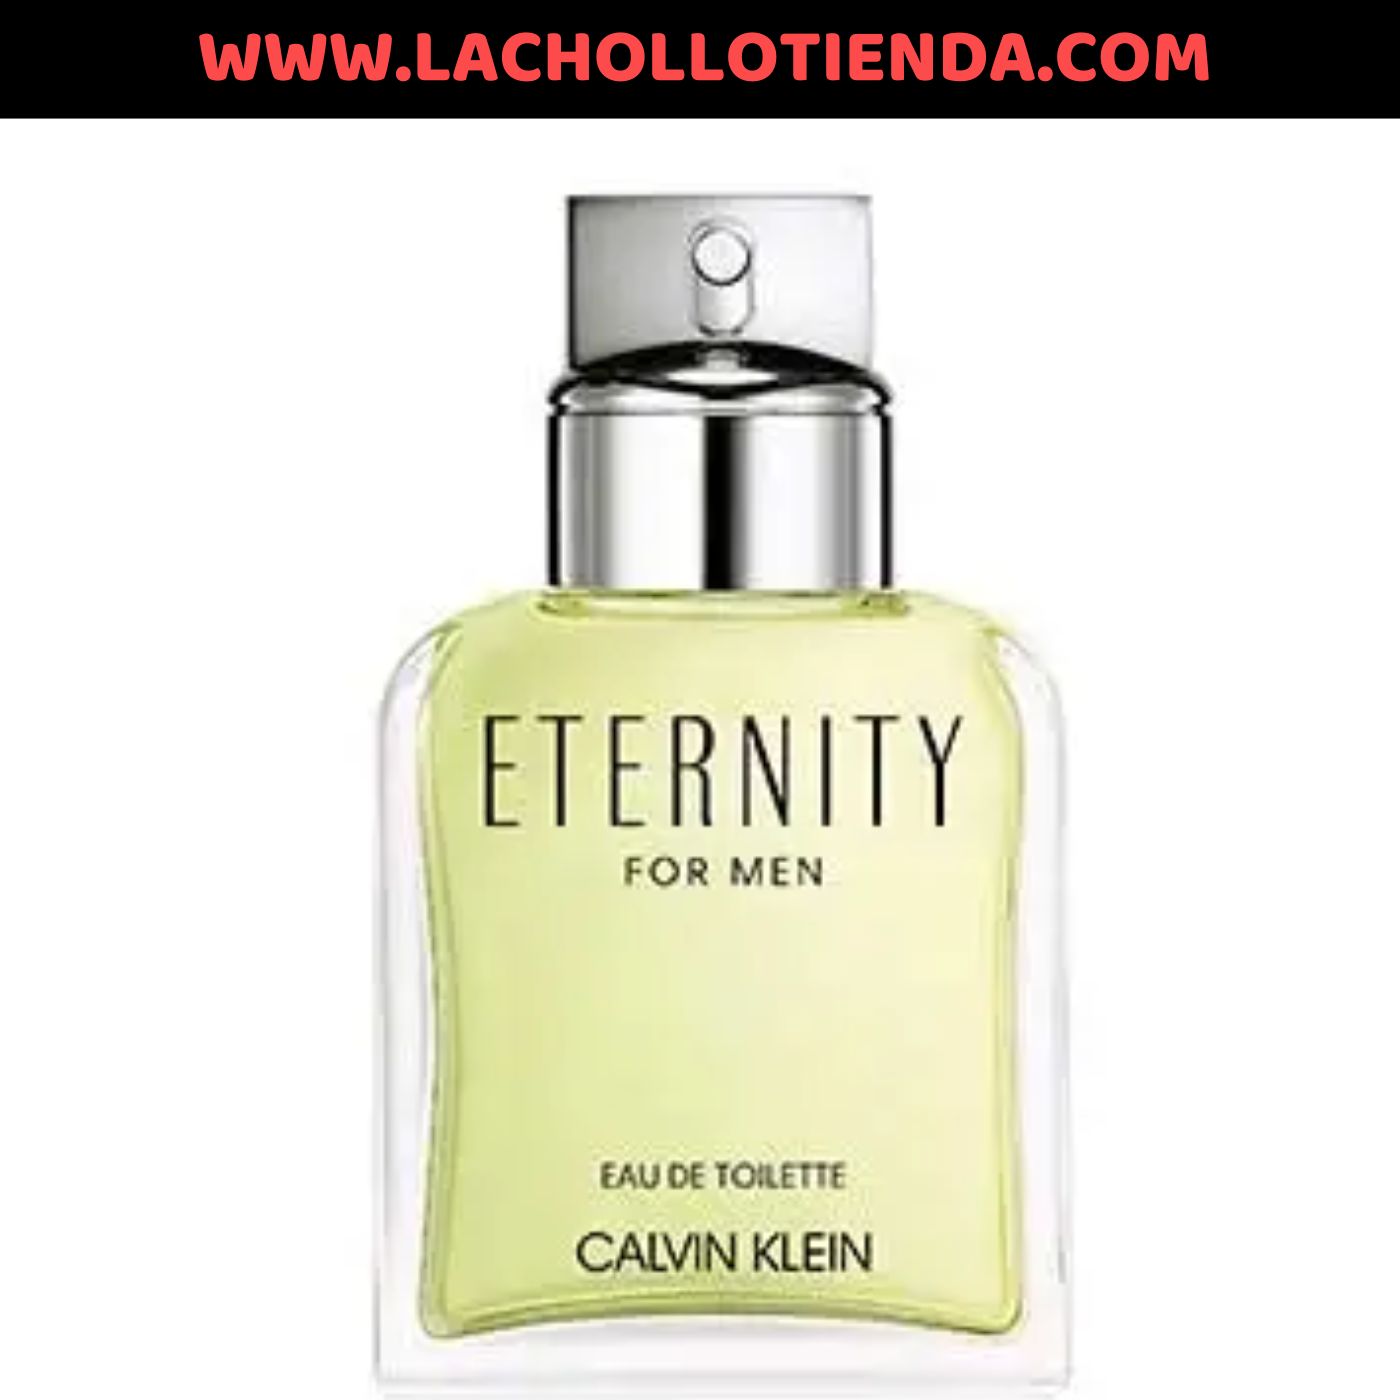 CK - Eternity For Men, Eau de toilette Hombre Original